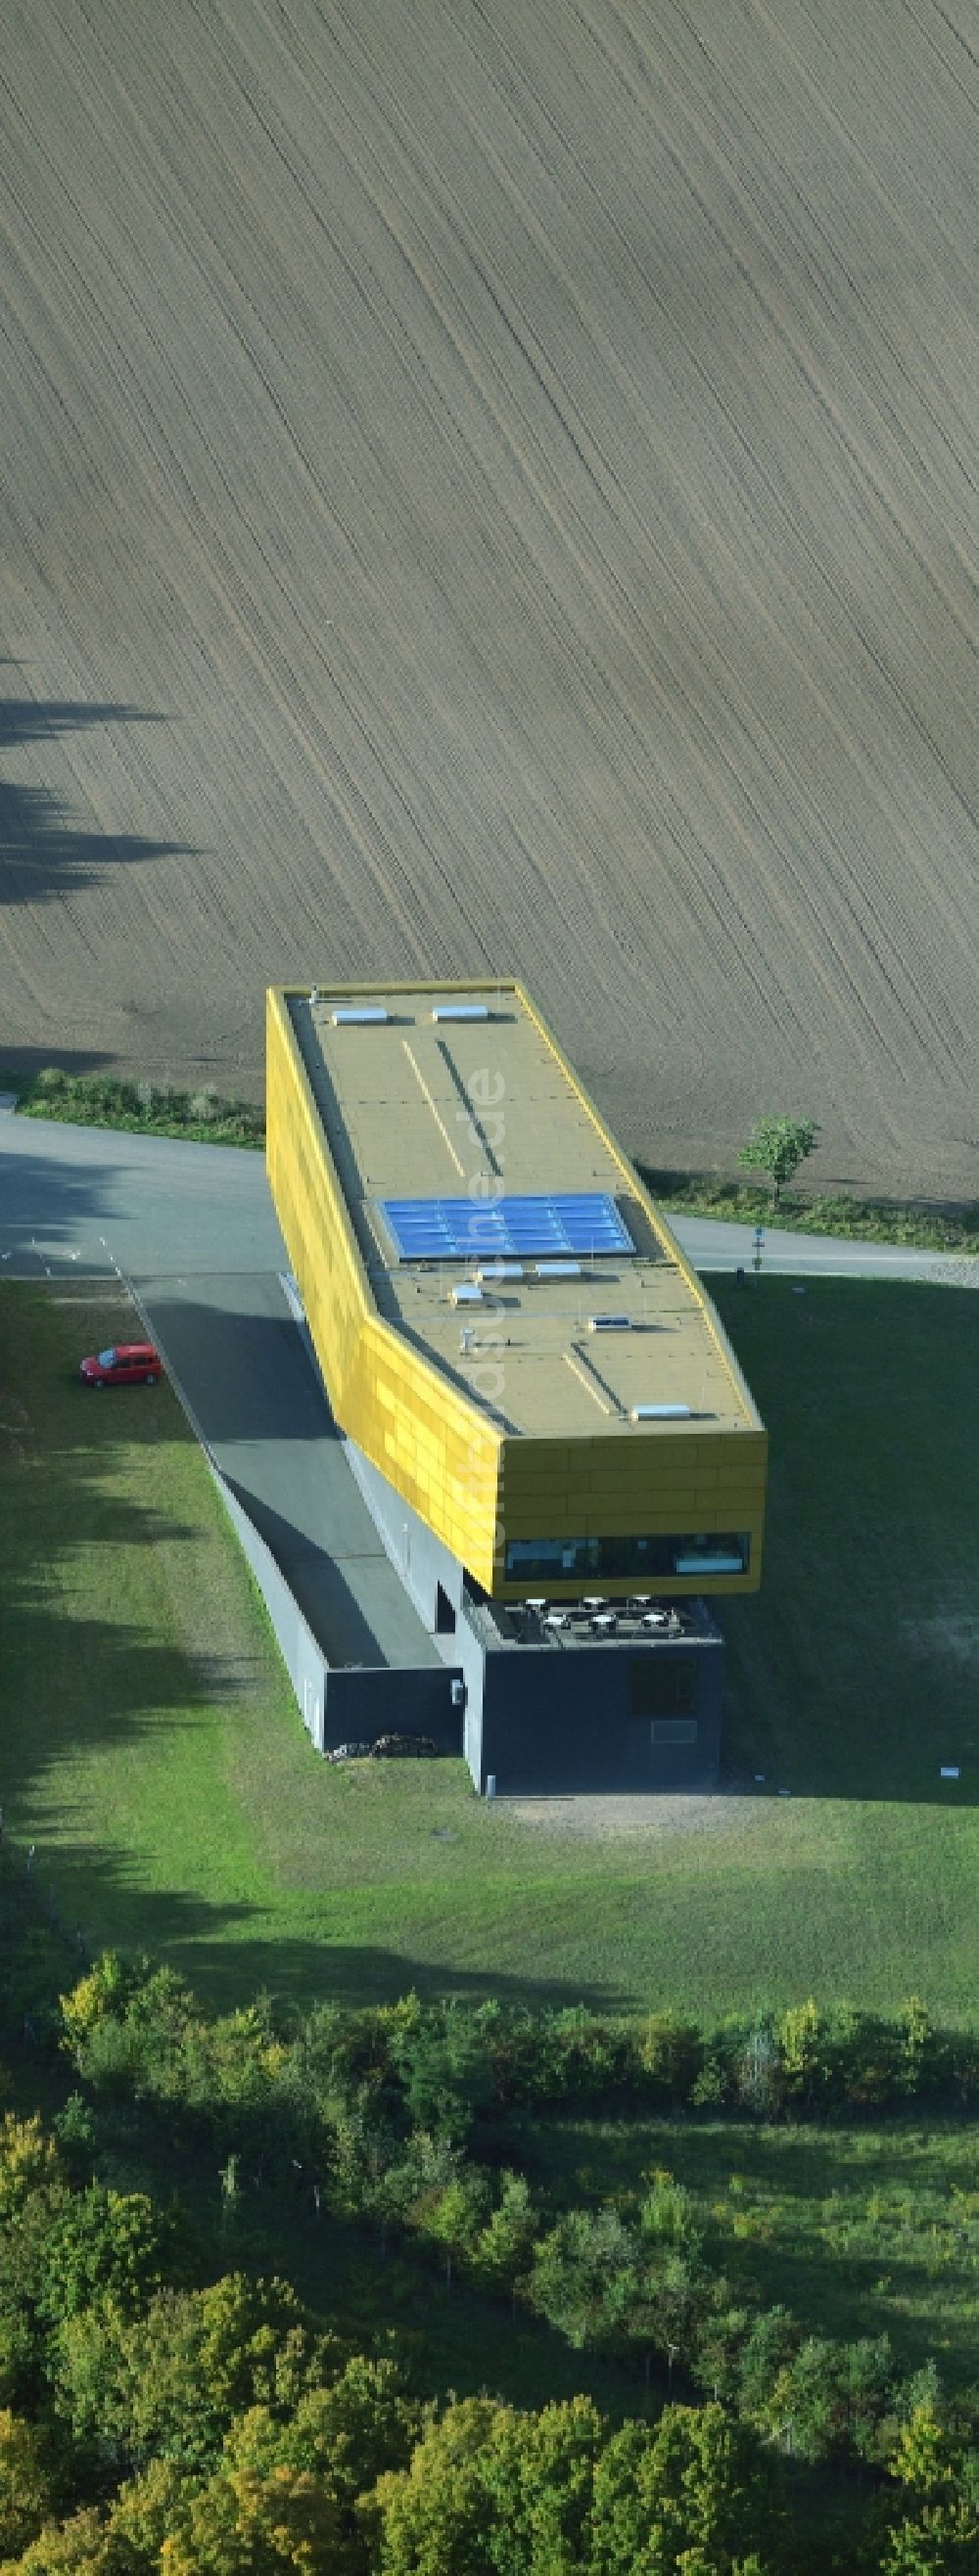 Luftbild Nebra (Unstrut) - Gebäude des Besucherzentrums Arche - Himmelsscheibe von Nebra in Nebra (Unstrut) im Bundesland Sachsen-Anhalt